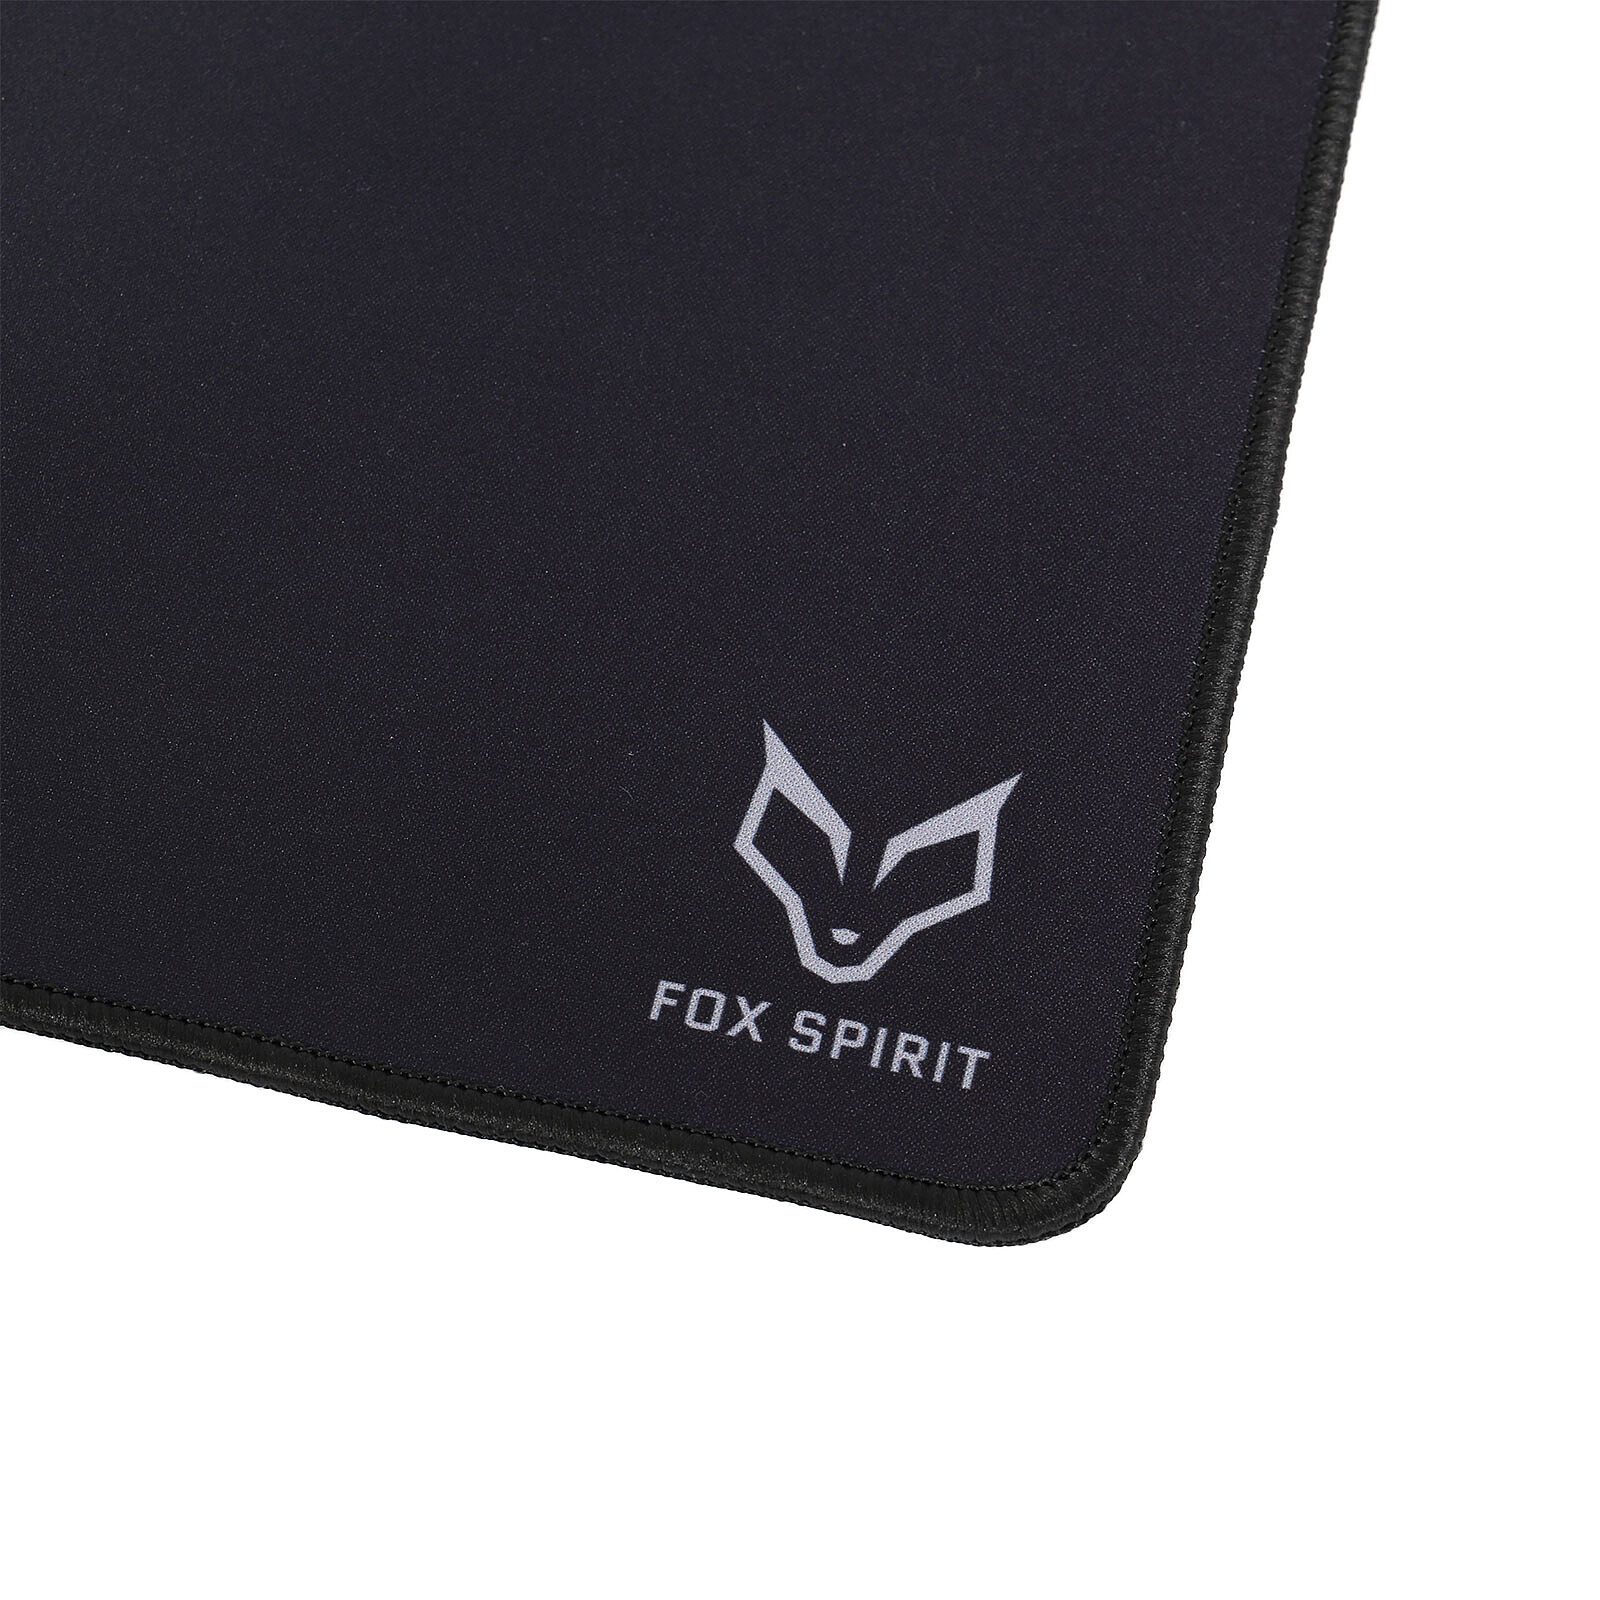 Spirit of Gamer Skull RGB Gaming Mouse Pad XXL - Tapis de souris - Garantie  3 ans LDLC